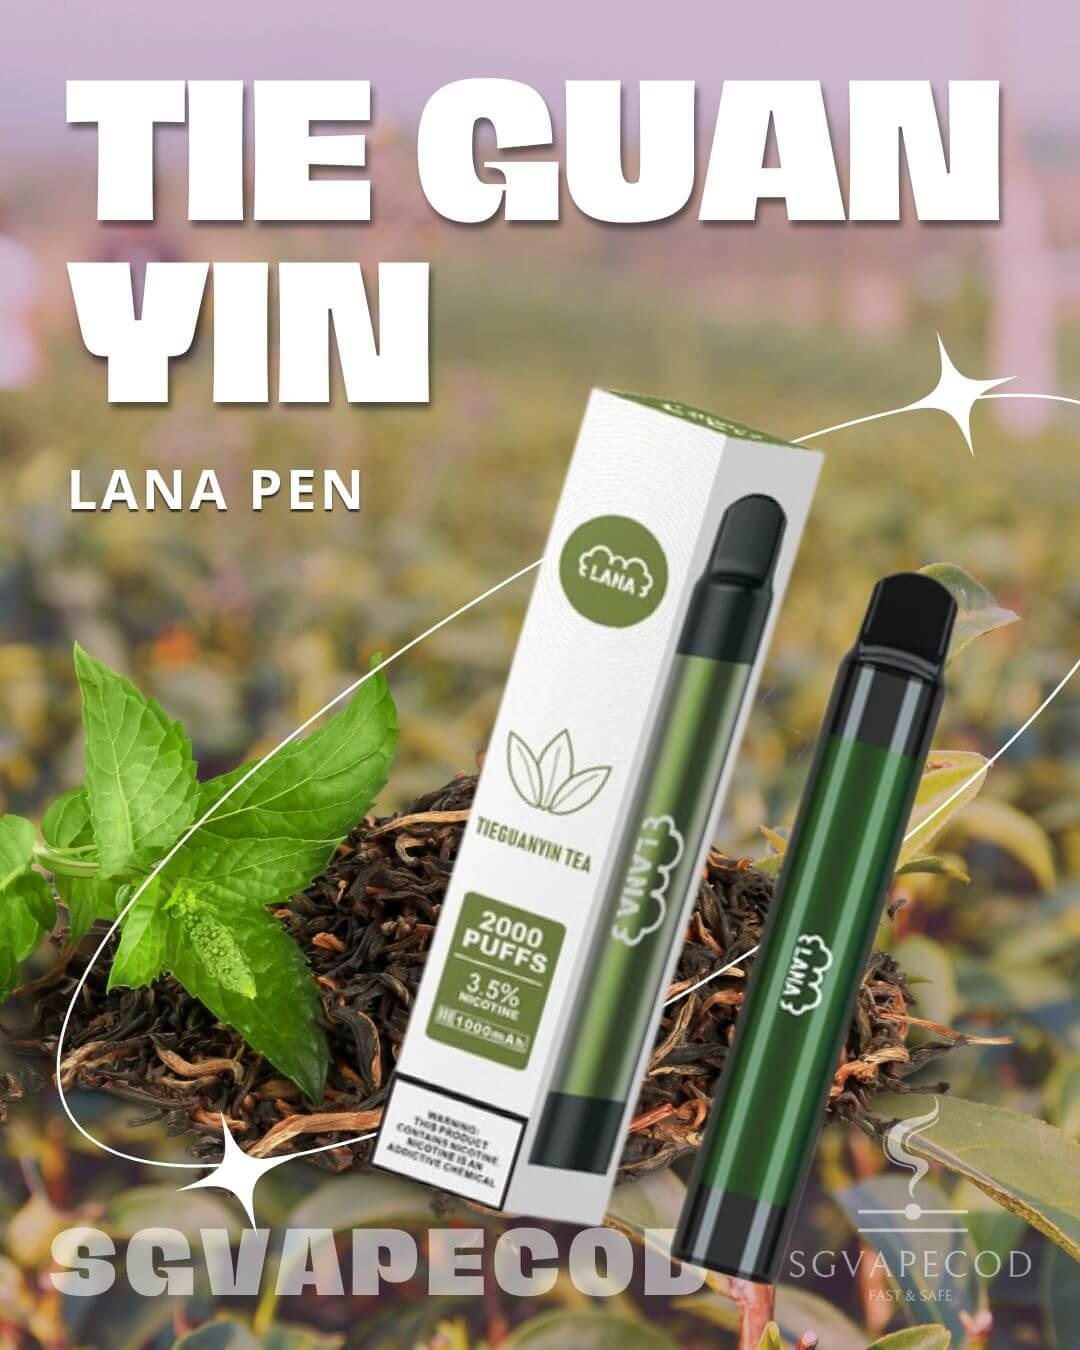 Lana Pen 2000-Tie Guan Yin